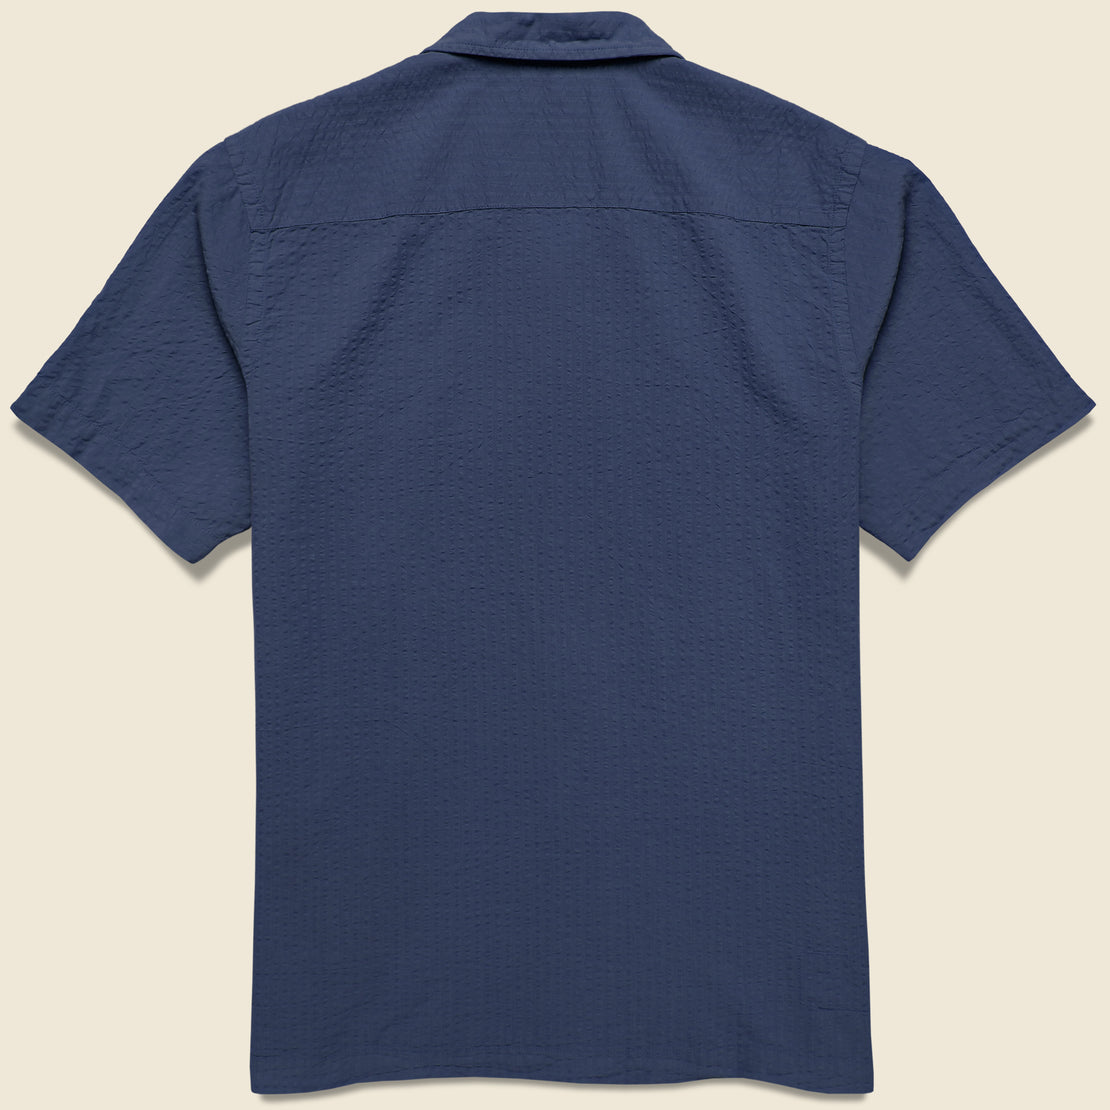 Onda Seersucker Camp Shirt - Navy - Universal Works - STAG Provisions - Tops - S/S Woven - Seersucker